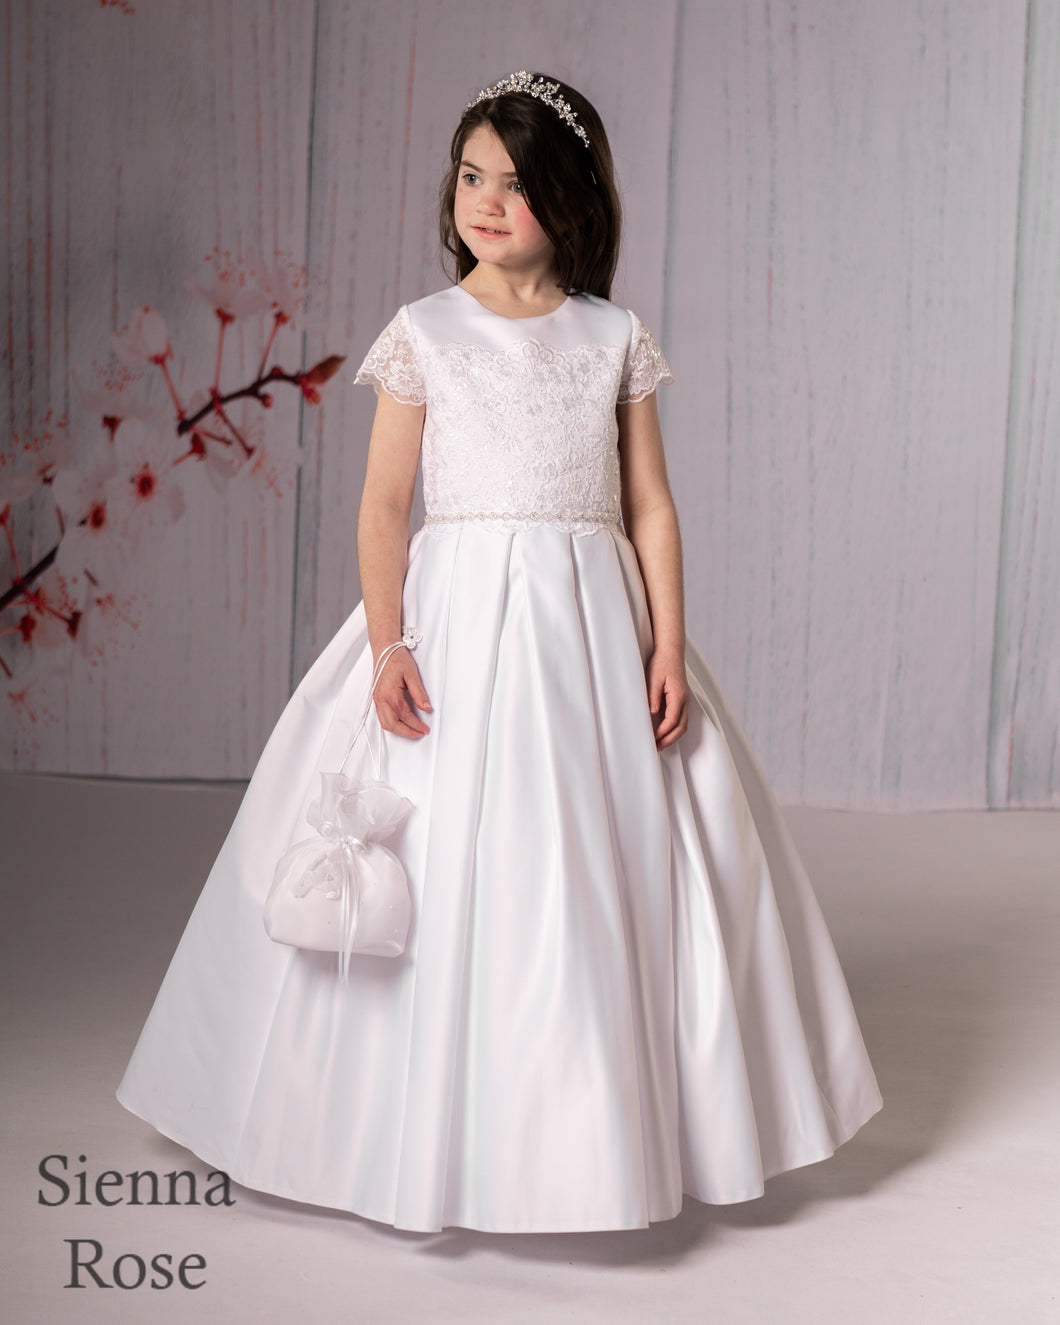 Sienna Rose By Sweetie Pie Girls White Communion Dress:- SR711